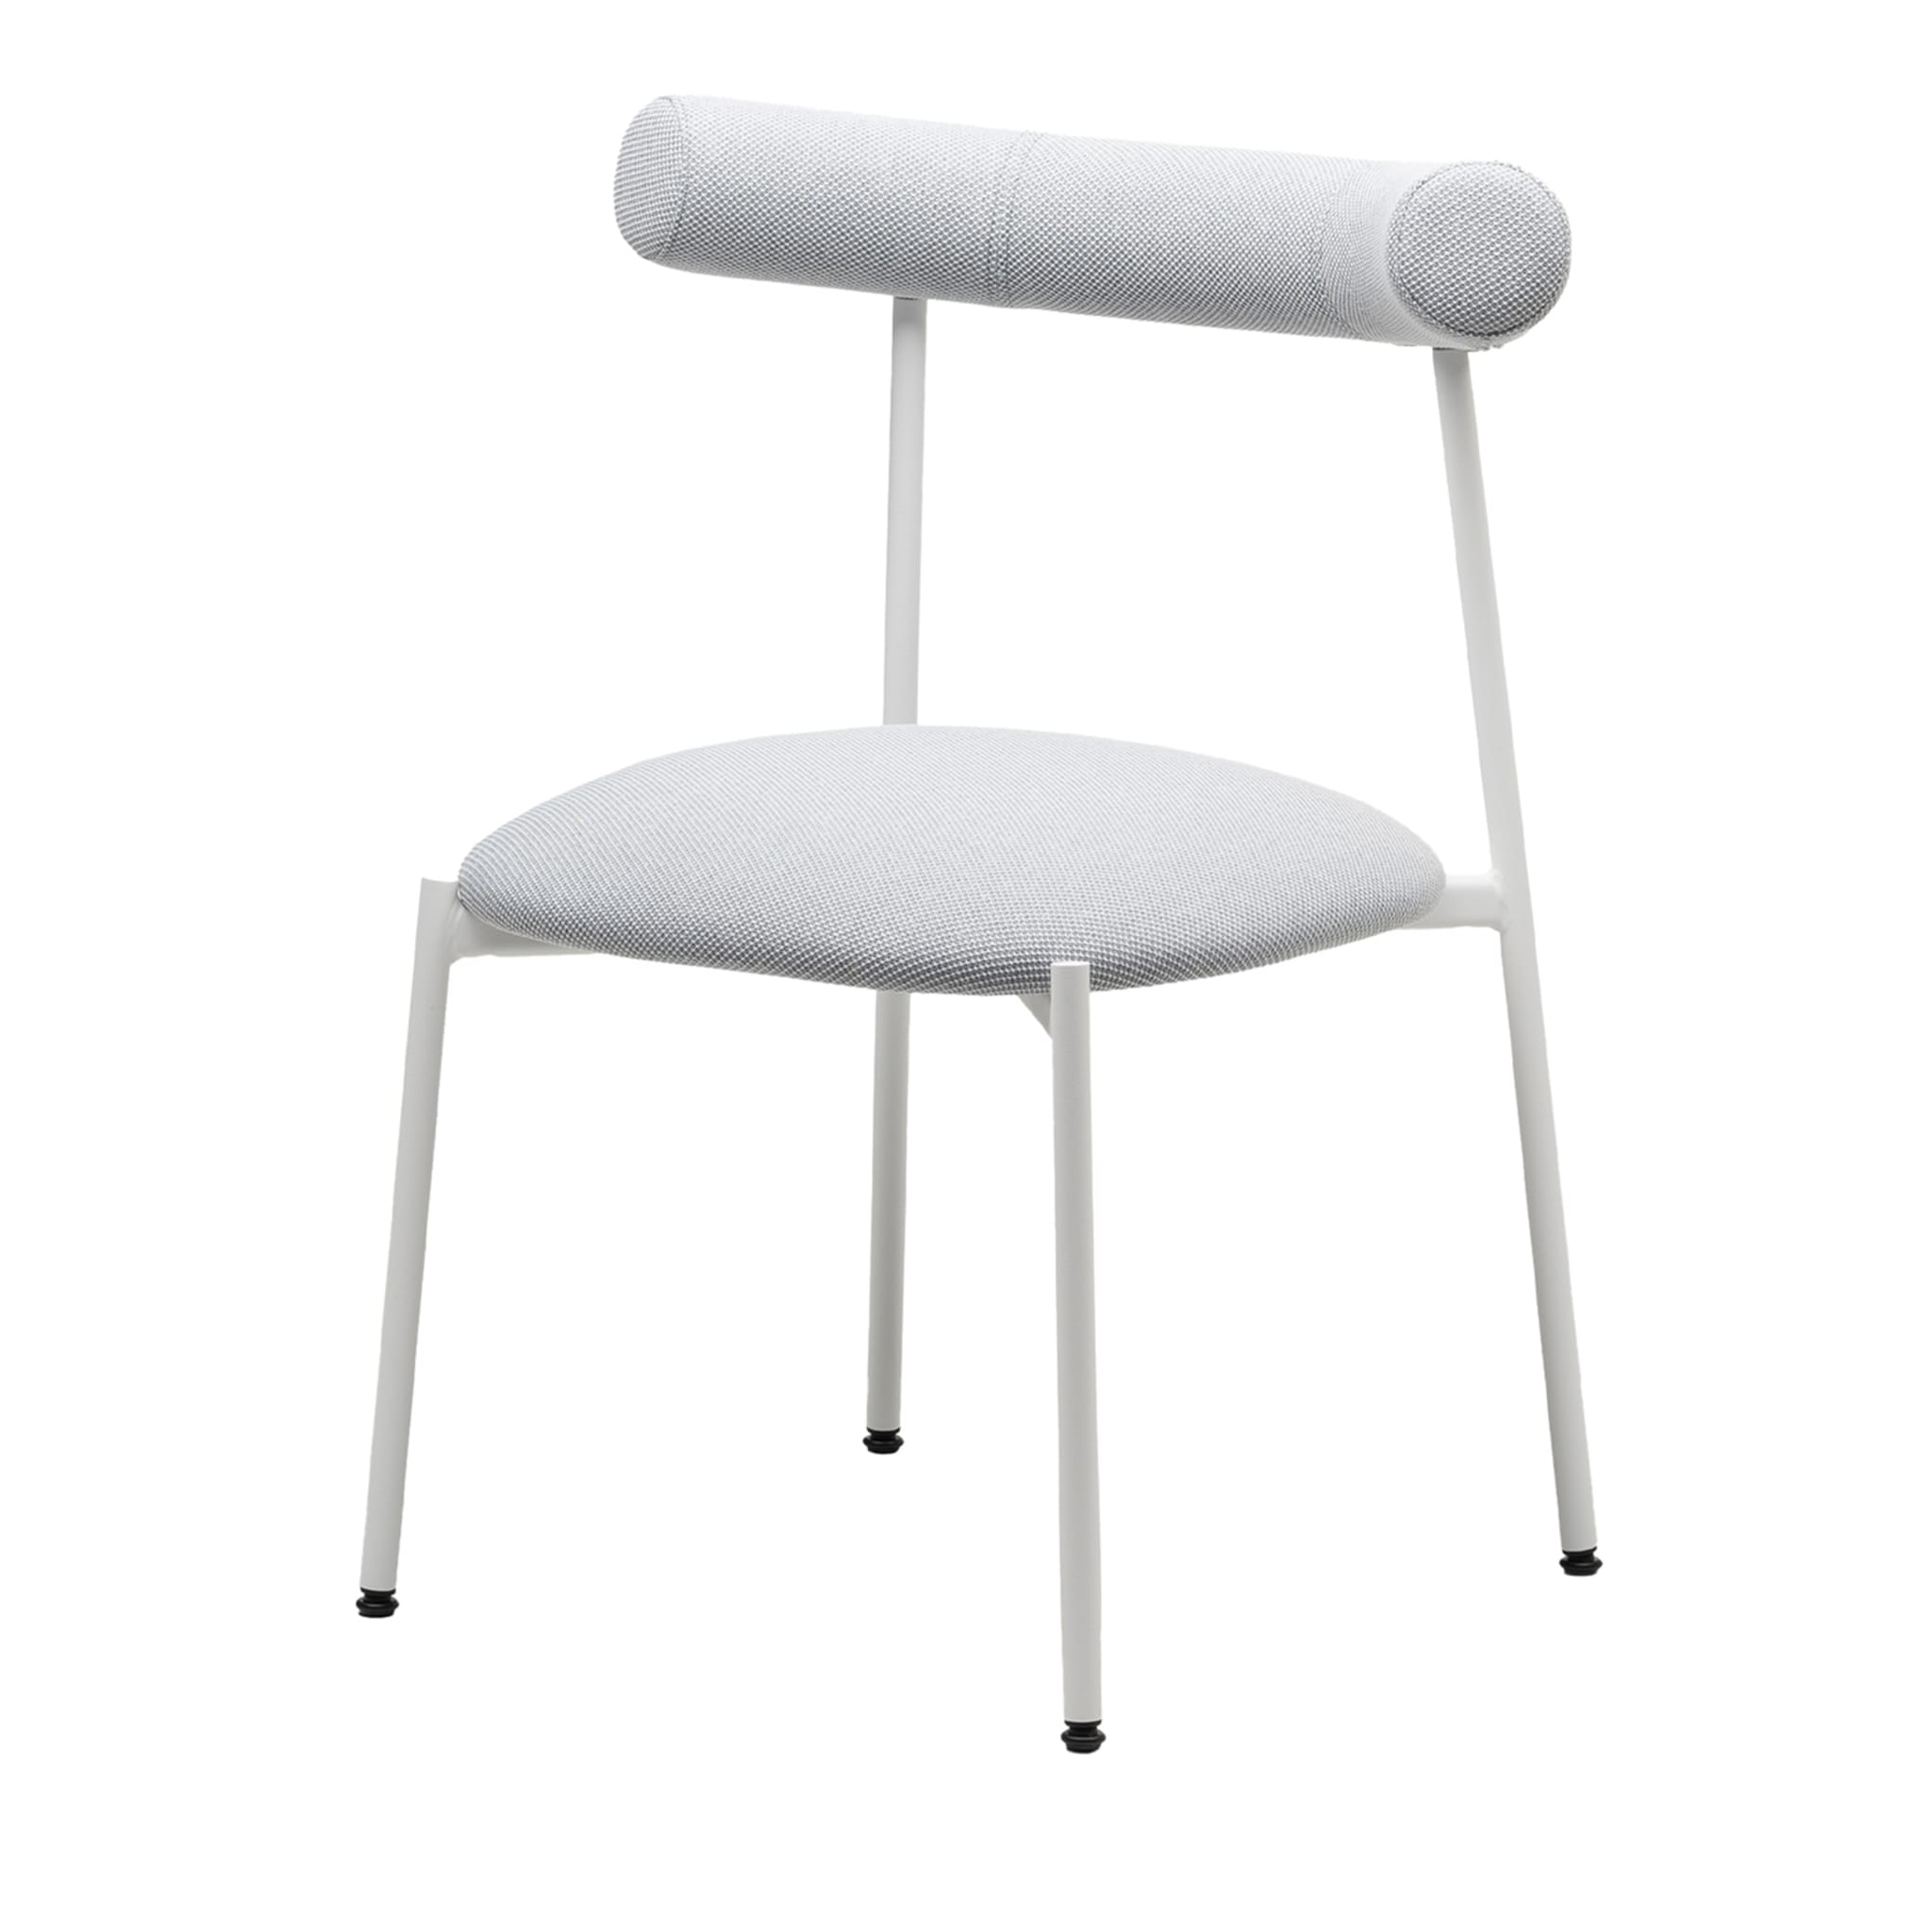 Pampa S White Chair by Studio Pastina - Main view